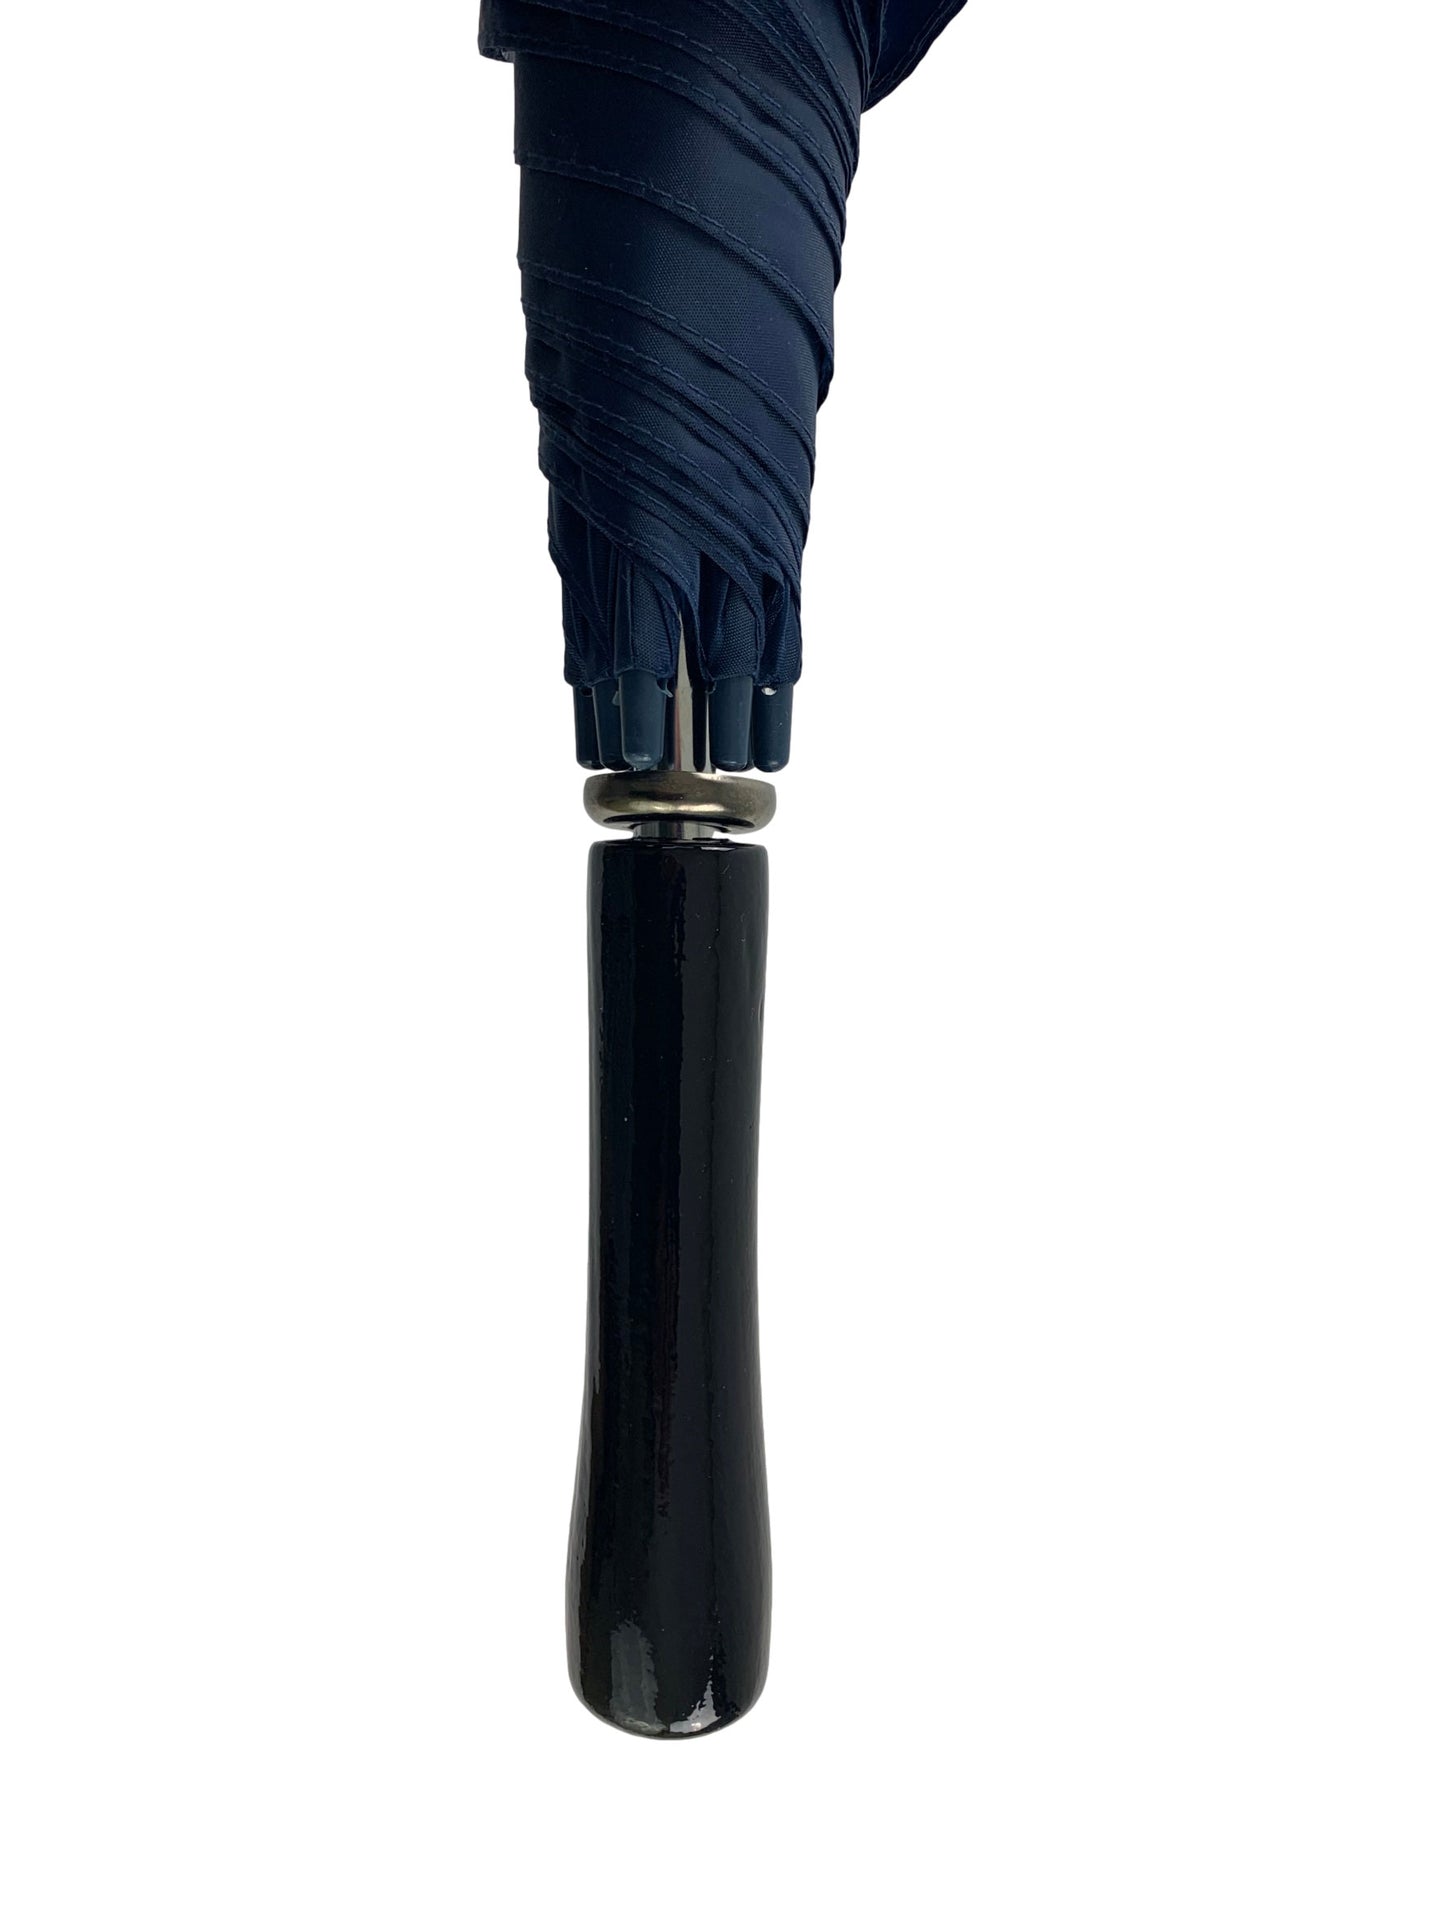 Μπλε Μαρίν (σκούρο) Ομπρέλα ΣΥΝΟΔΕΙΑΣ με 8 διπλές ακτίνες (Κωδικός 01-03-0327)